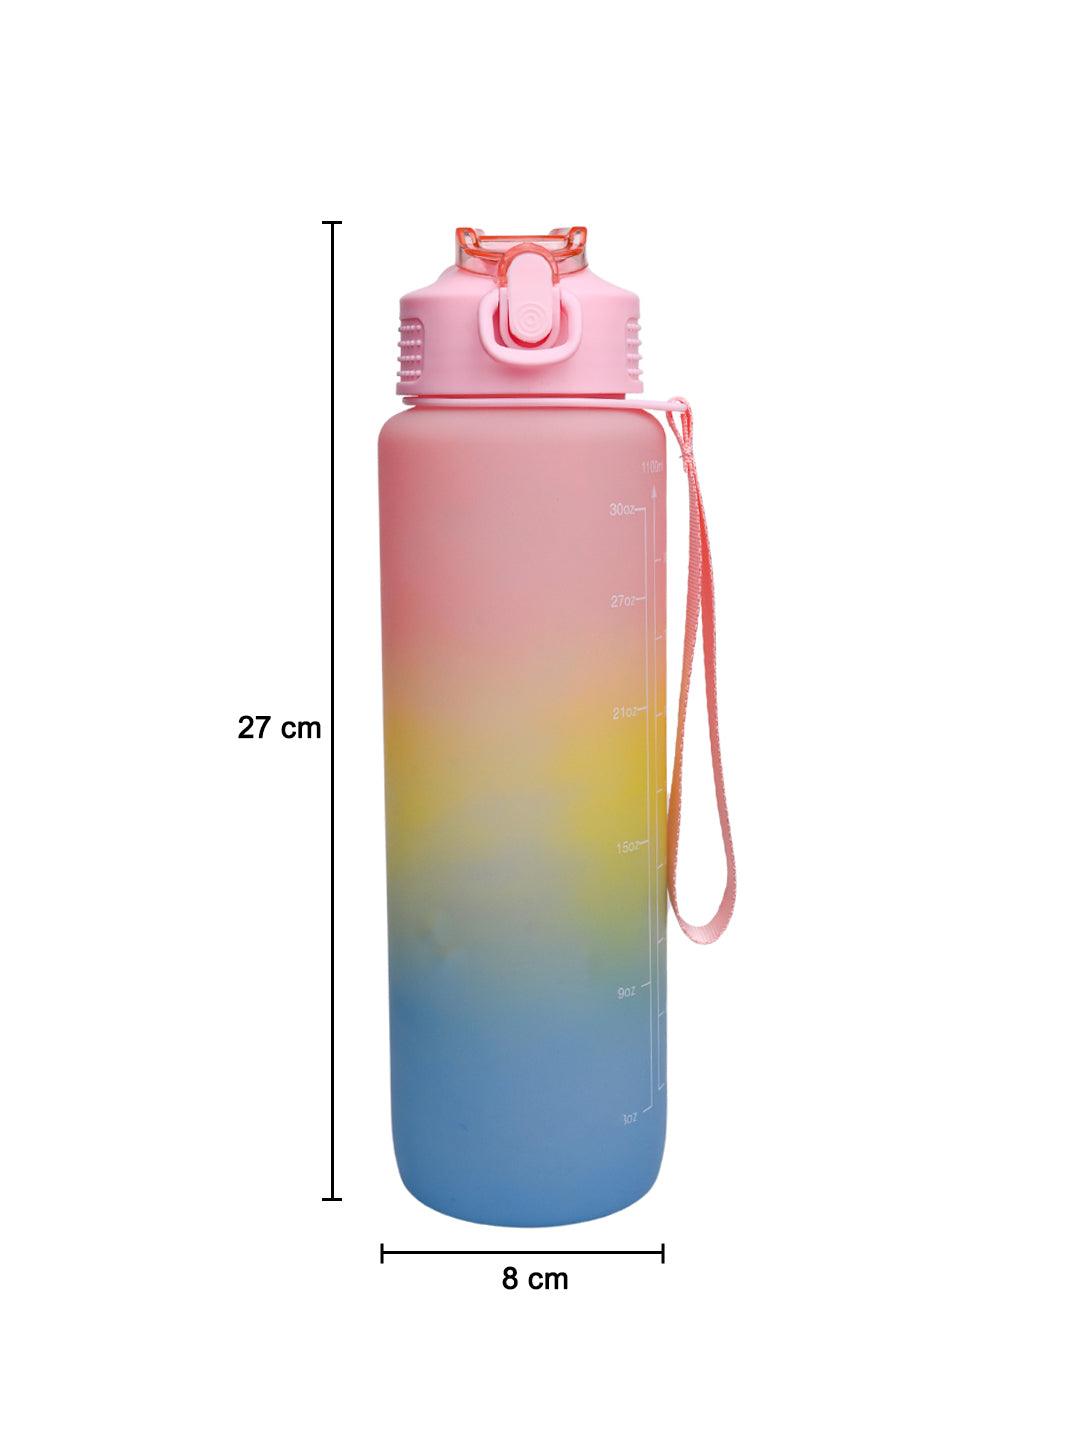 Sipper Travel Water Bottle, Multi, 1 Liter - MARKET 99